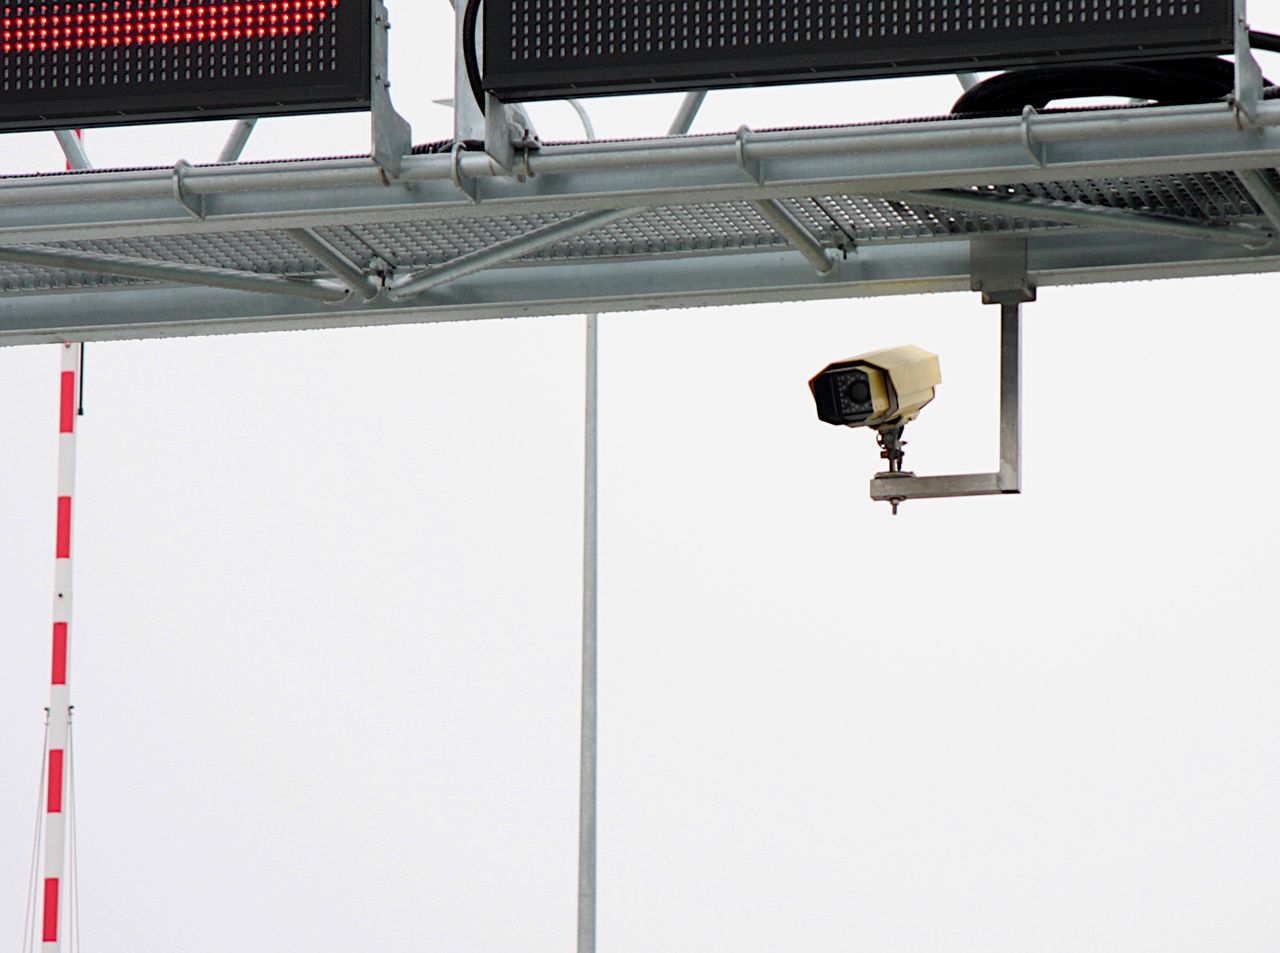 Nowy rodzaj fotoradarów trafia do Polski. Wiemy, gdzie staną urządzenia